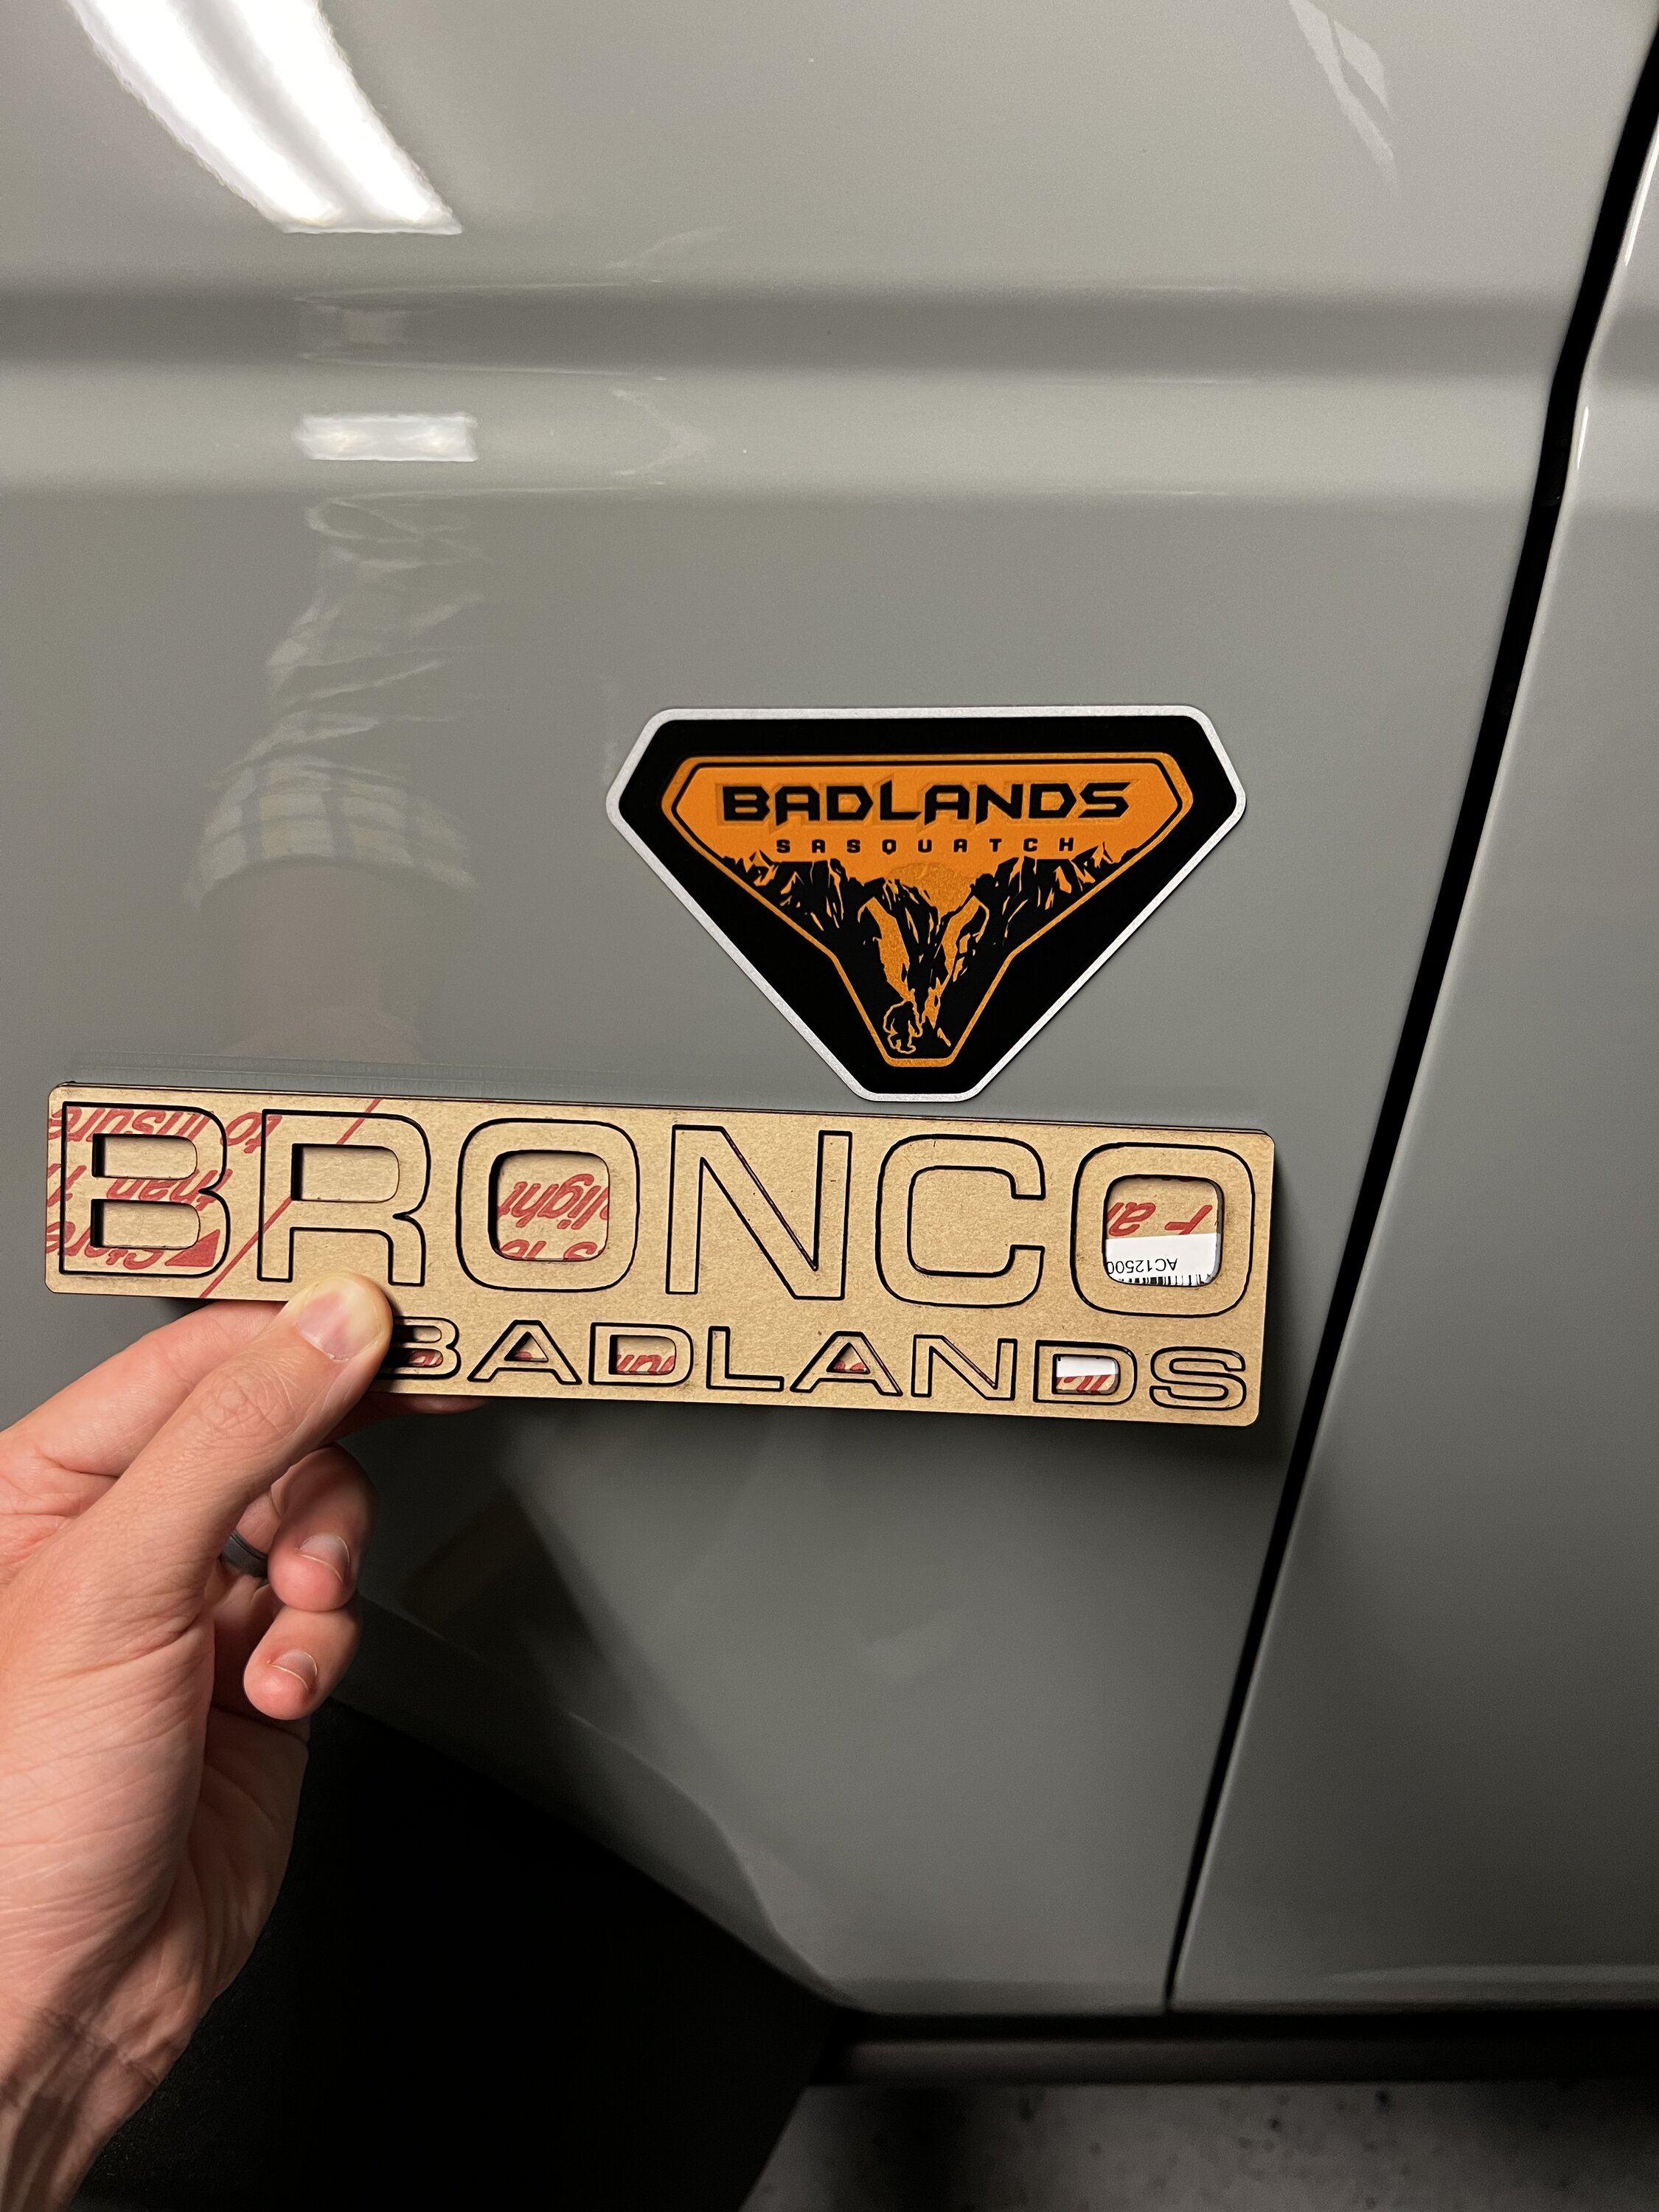 Ford Bronco Custom "BRONCO BADLANDS" Badges - '90s Old Body Style by No Shame Garage 20221008_075000~2